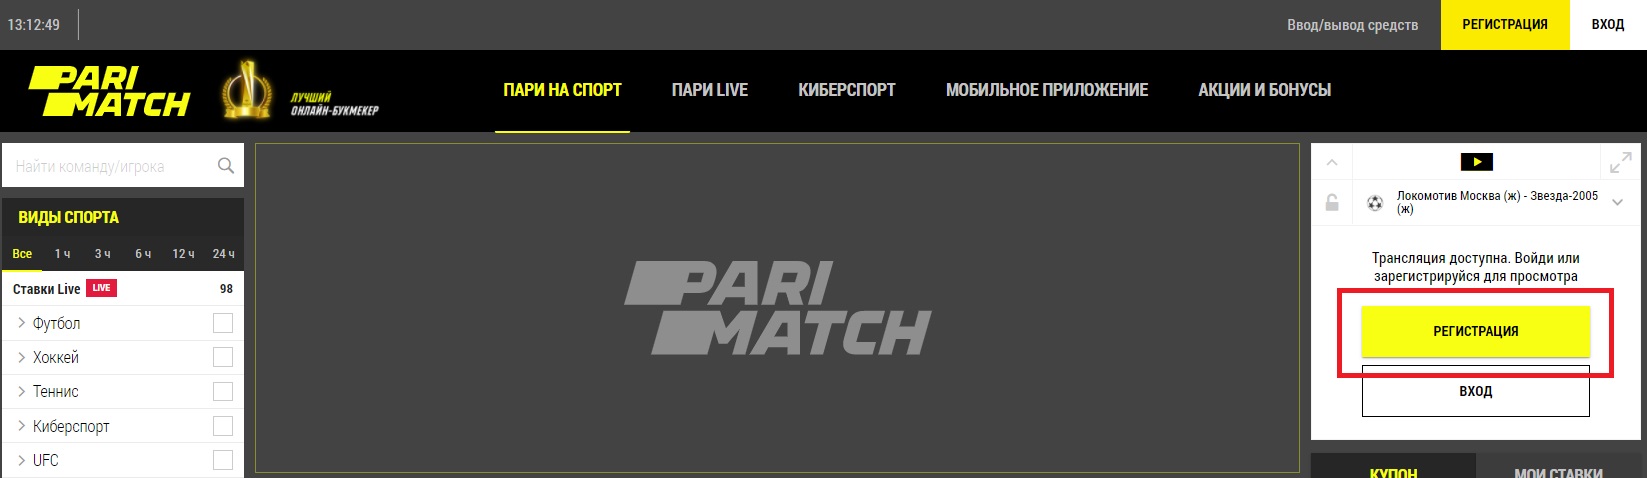 parimatch casino официальный сайт вход в личный